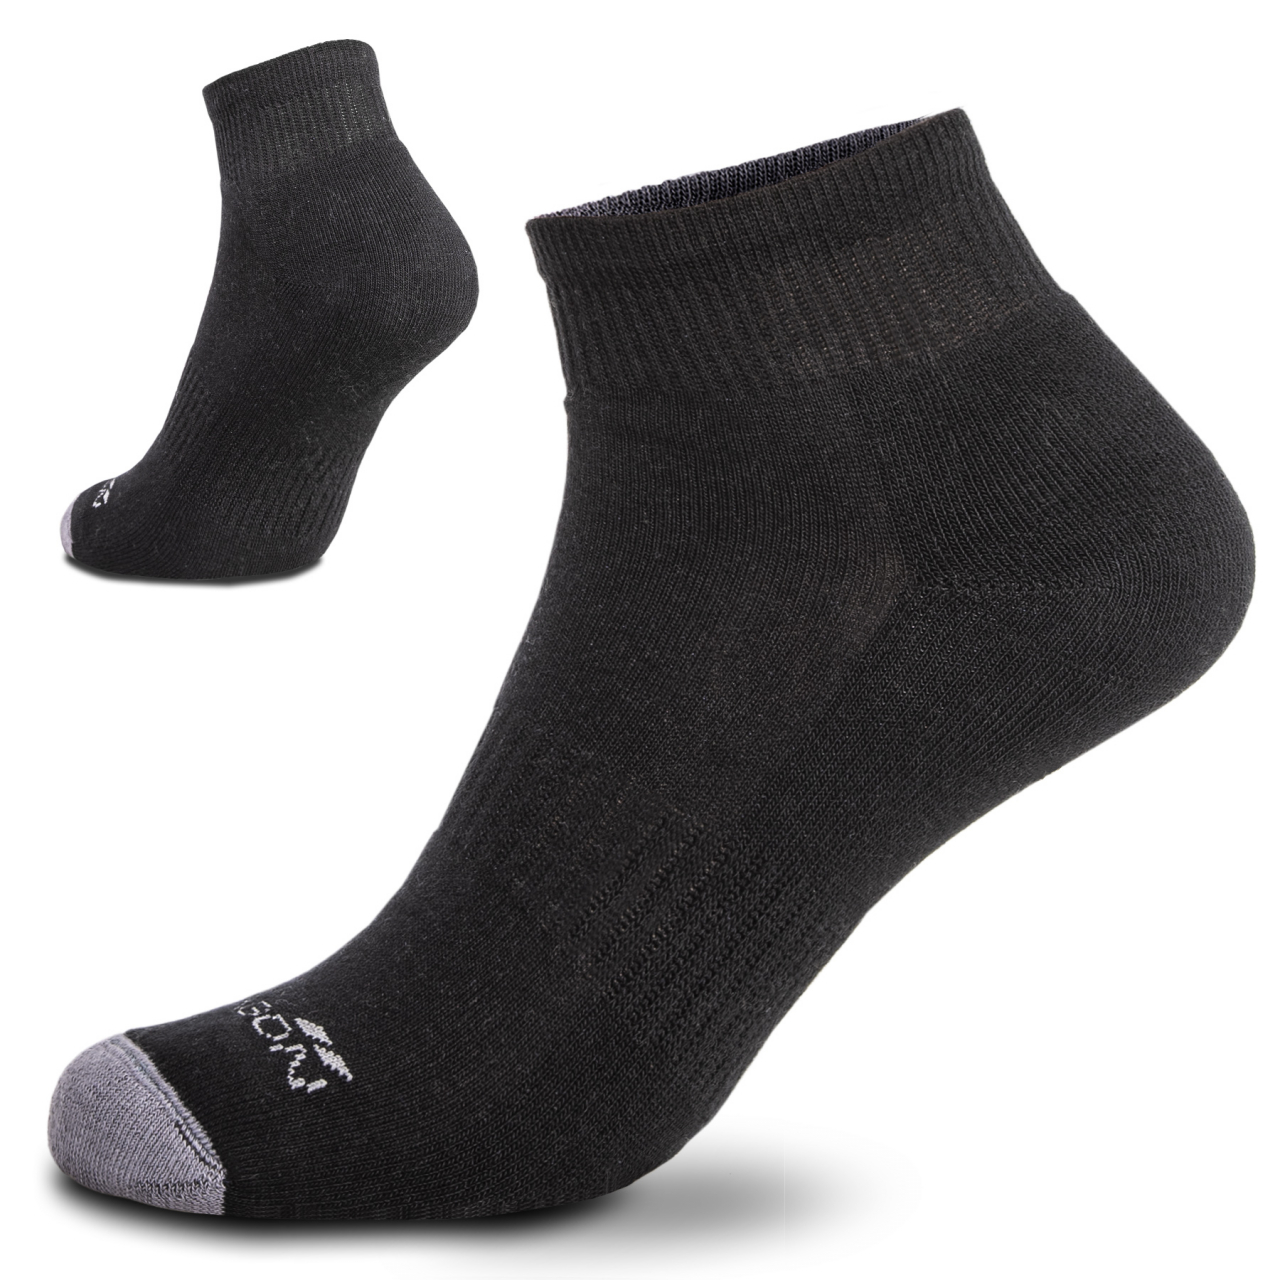 Ponožky Pentagon Low Cut Socks - černé, 45-47